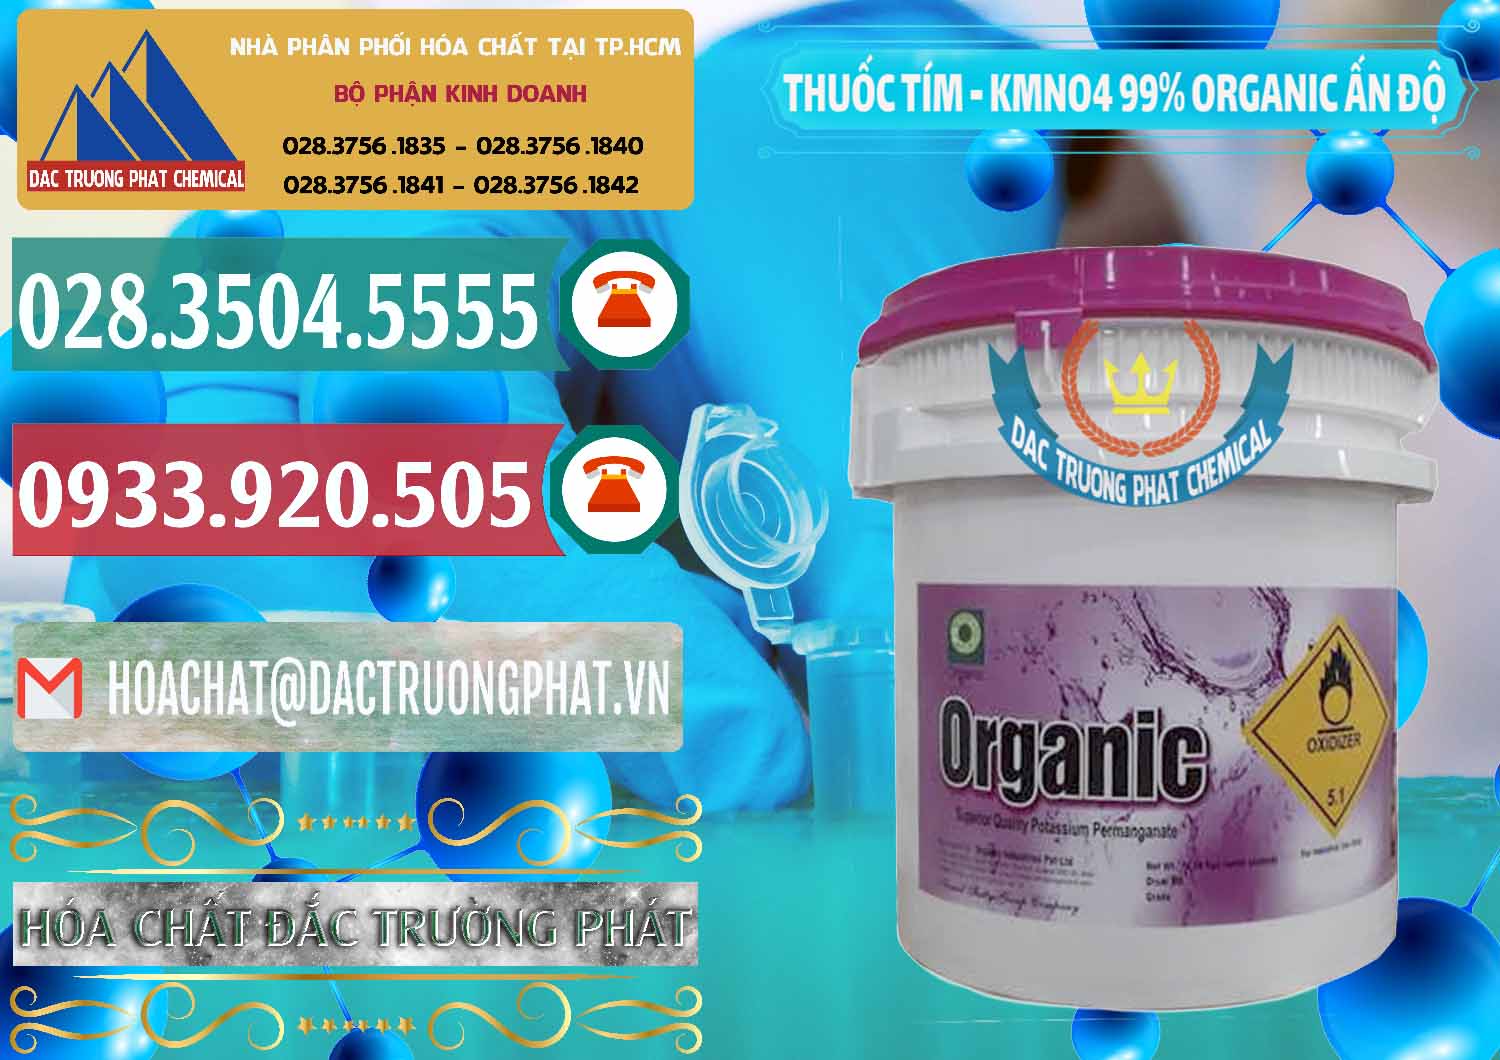 Nơi chuyên kinh doanh và bán Thuốc Tím - KMNO4 99% Organic Ấn Độ India - 0216 - Công ty nhập khẩu _ cung cấp hóa chất tại TP.HCM - muabanhoachat.vn